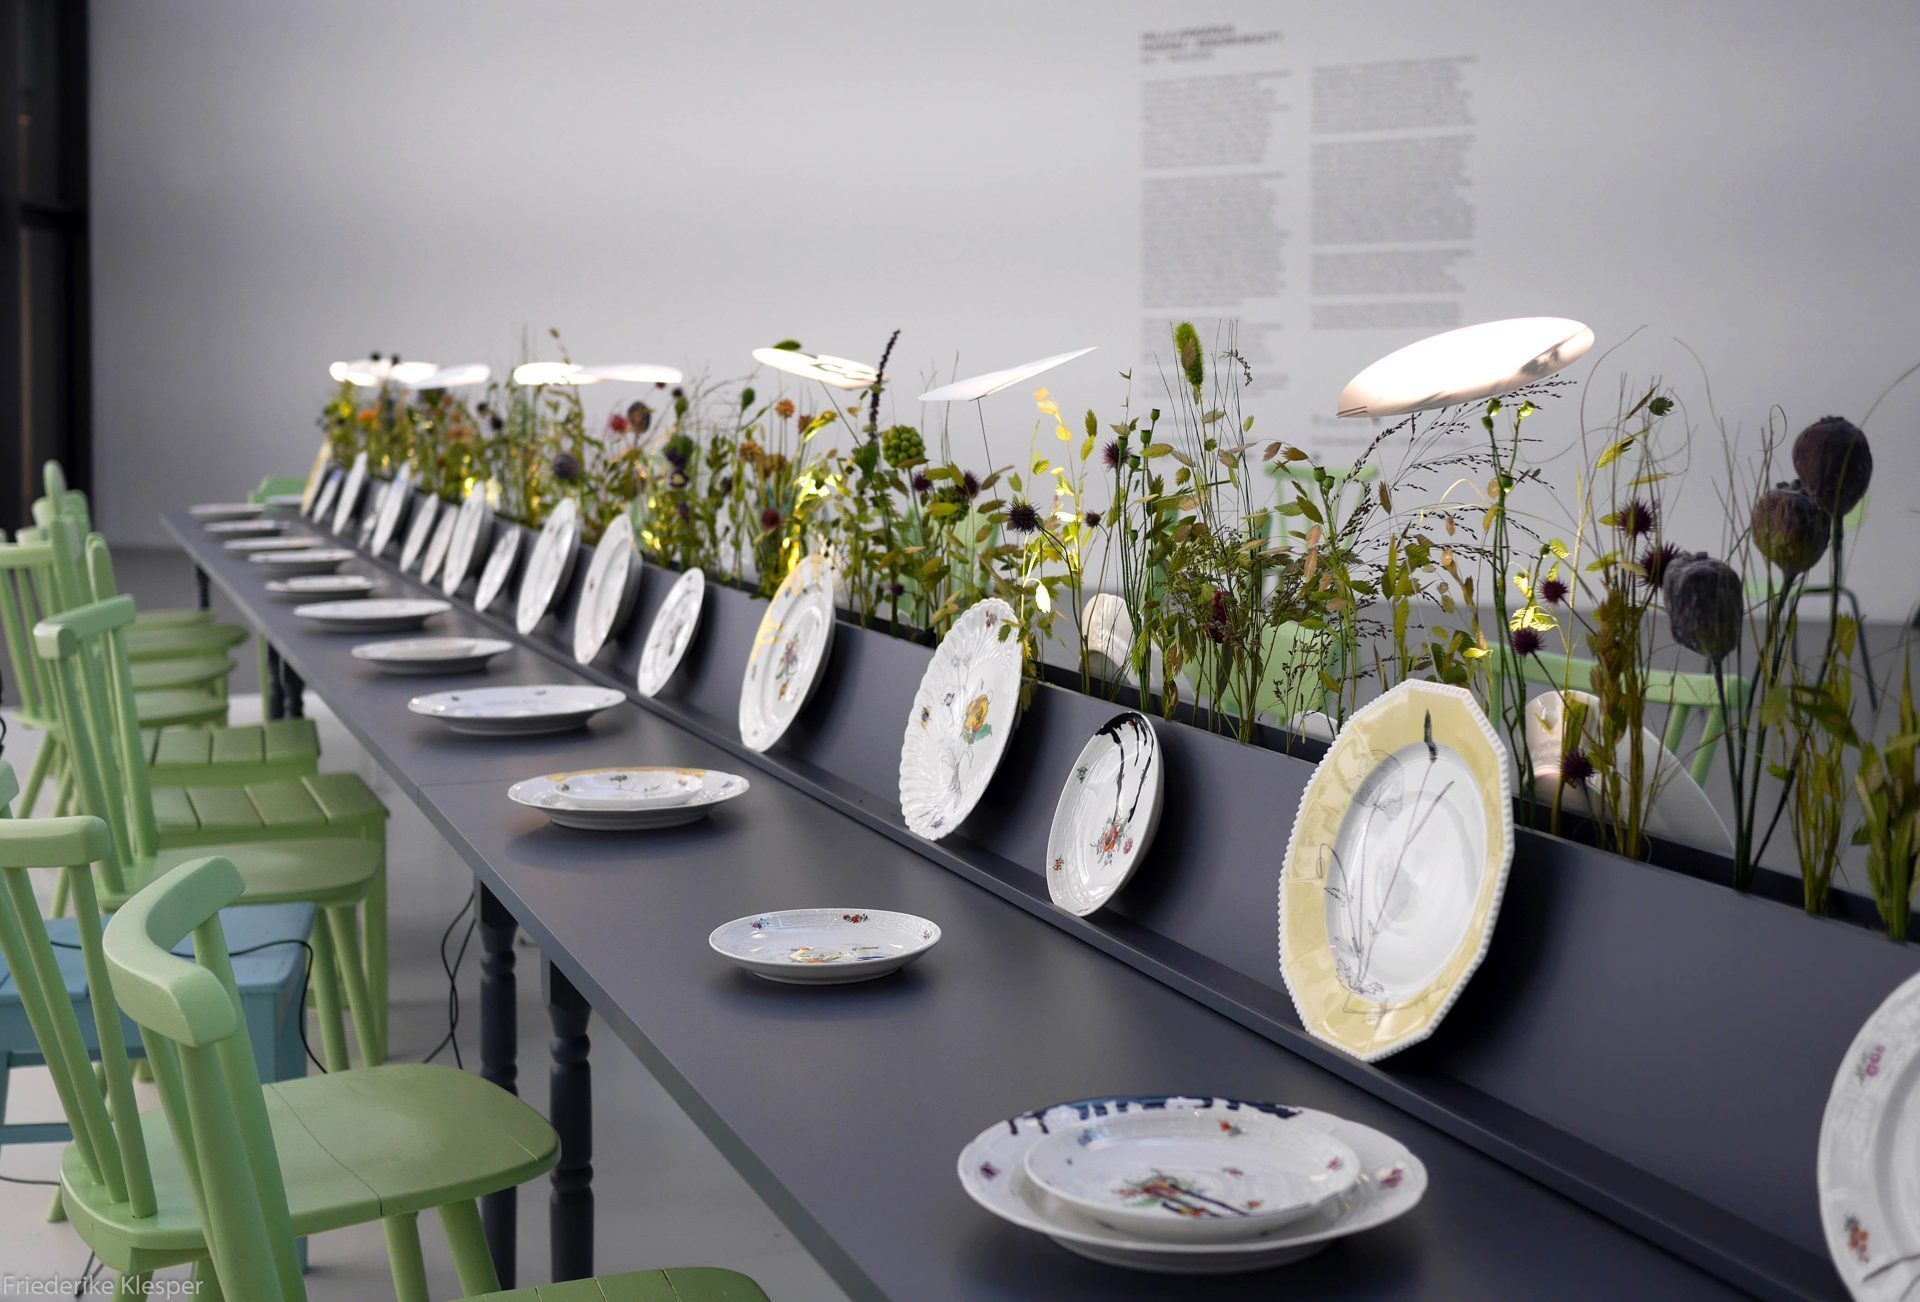 Tisch mit liegenden und stehenden Tellern, Blumendekoration und Leuchten, Stühle